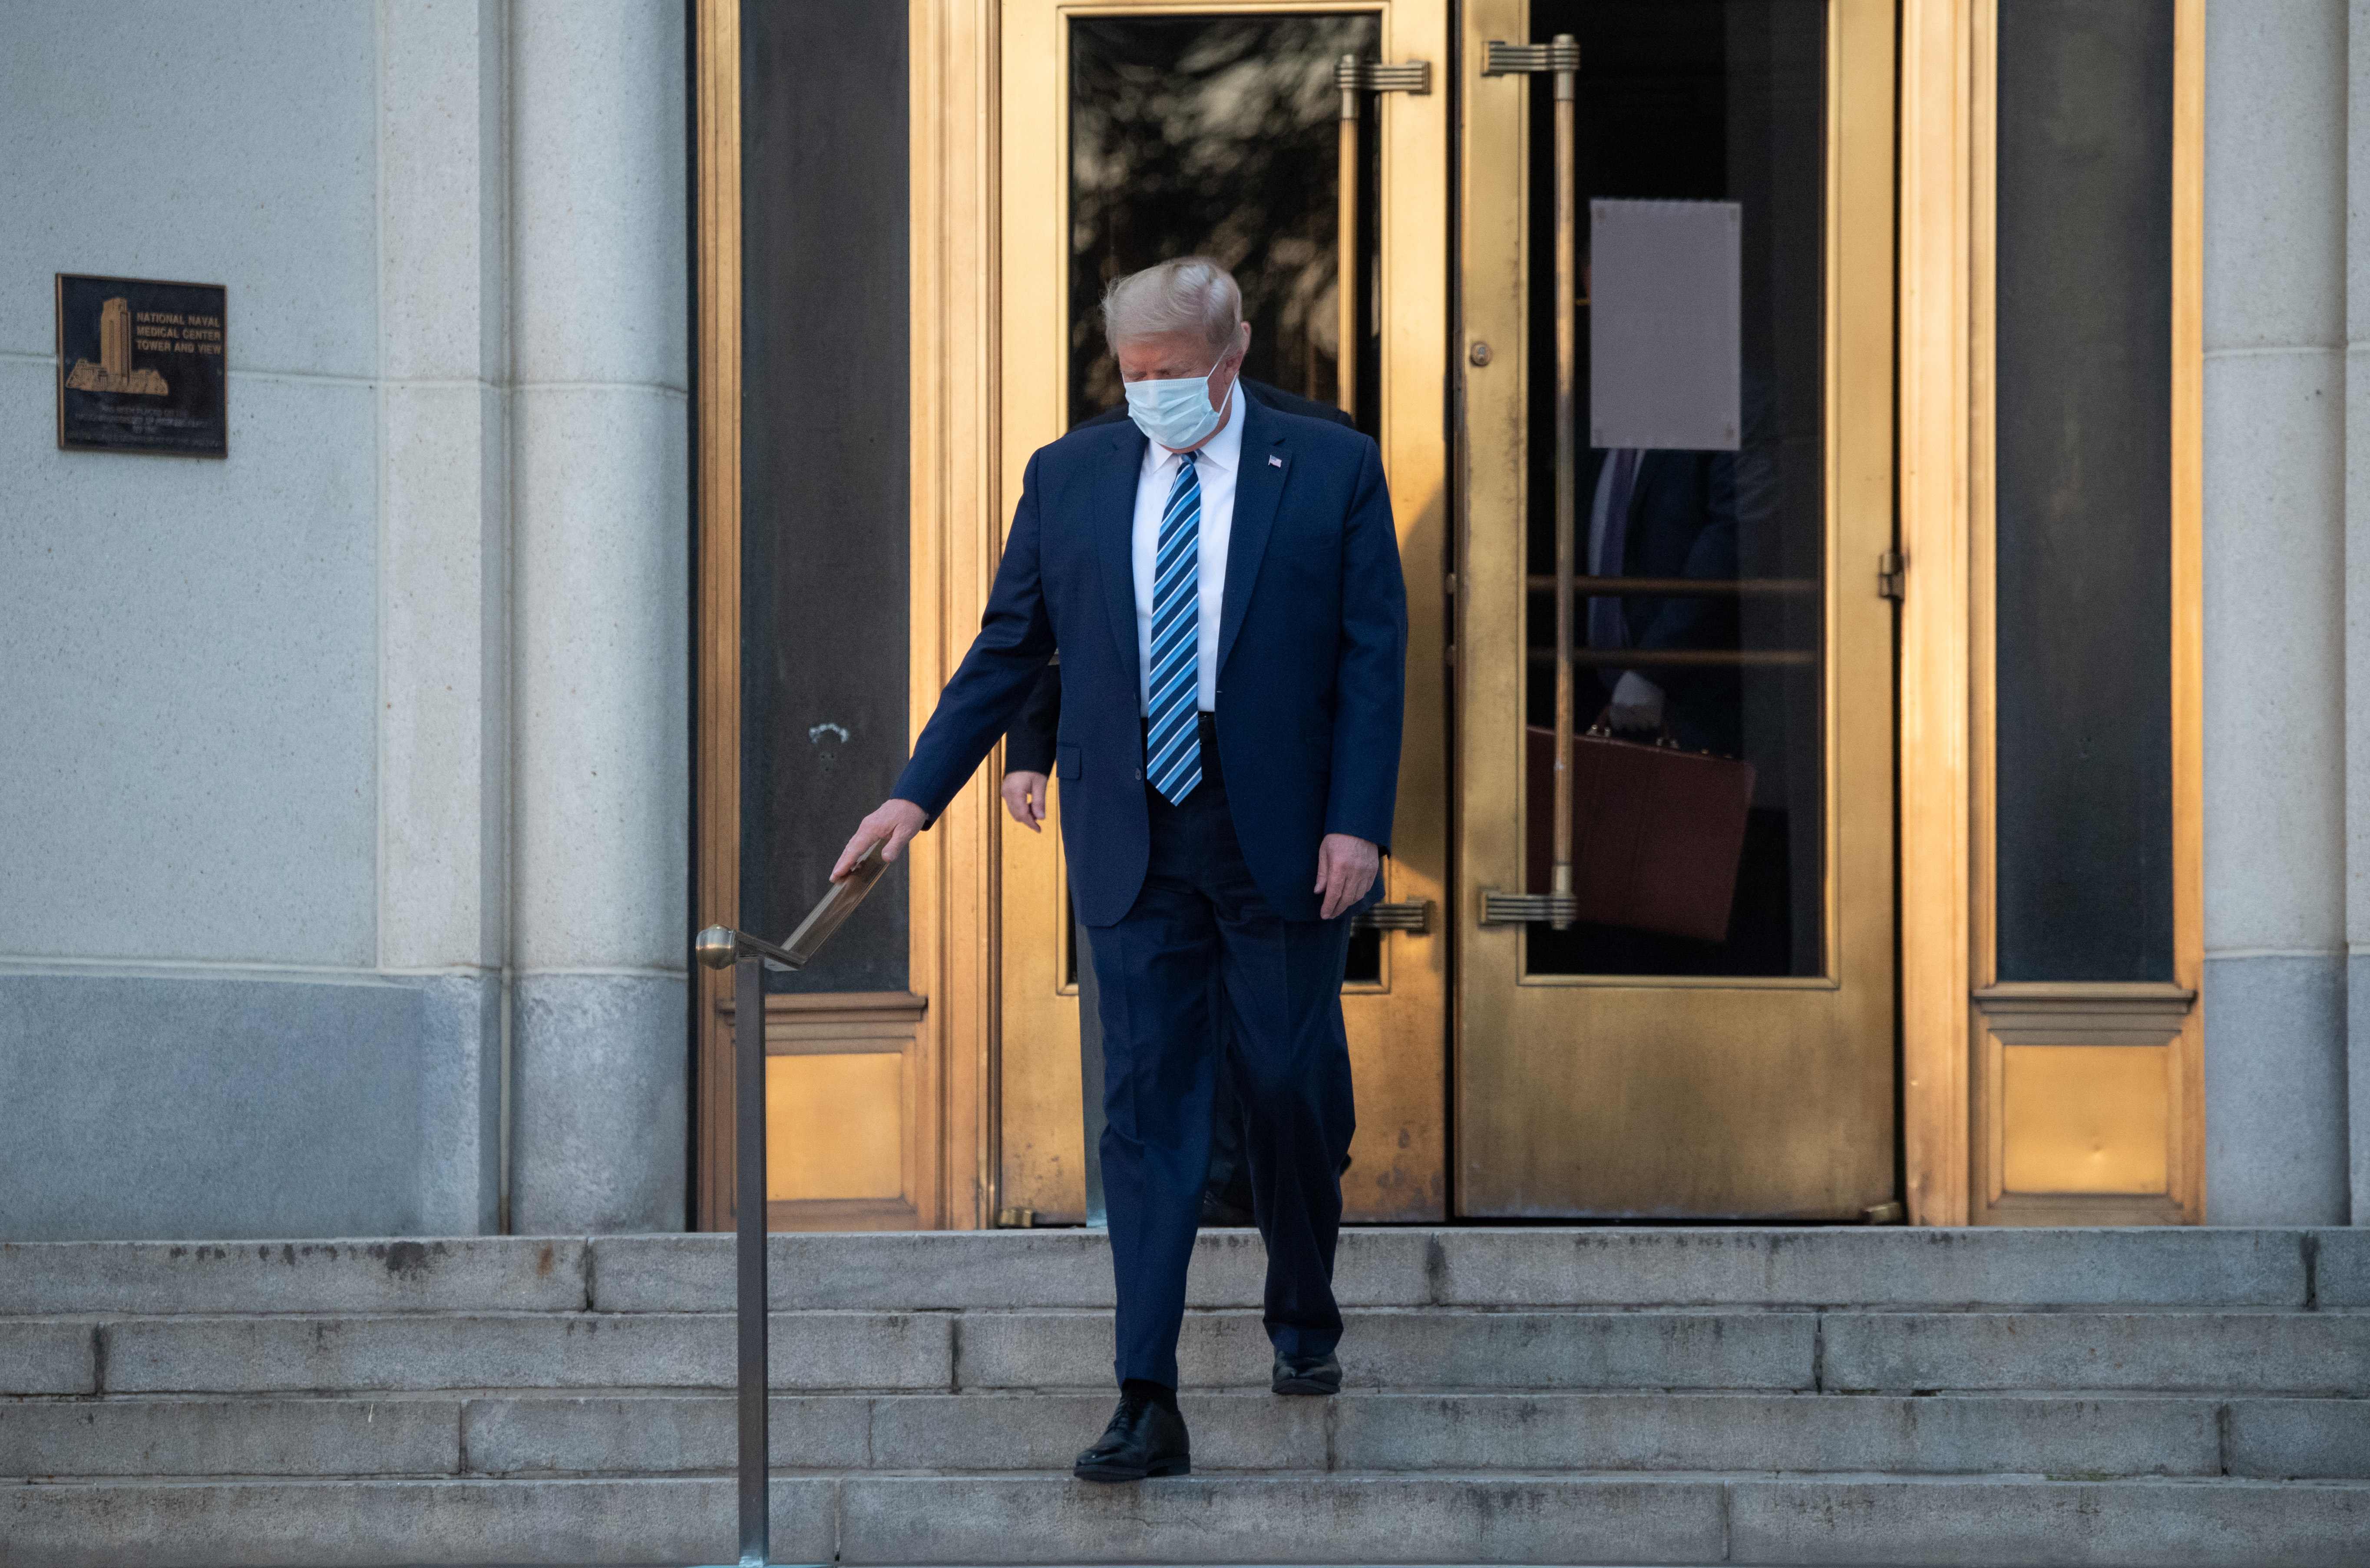 El presidente de Estados Unidos, Donald Trump, salió del hospital para trasladarse a la Casa Blanca. (Foto Prensa Libre: AFP)